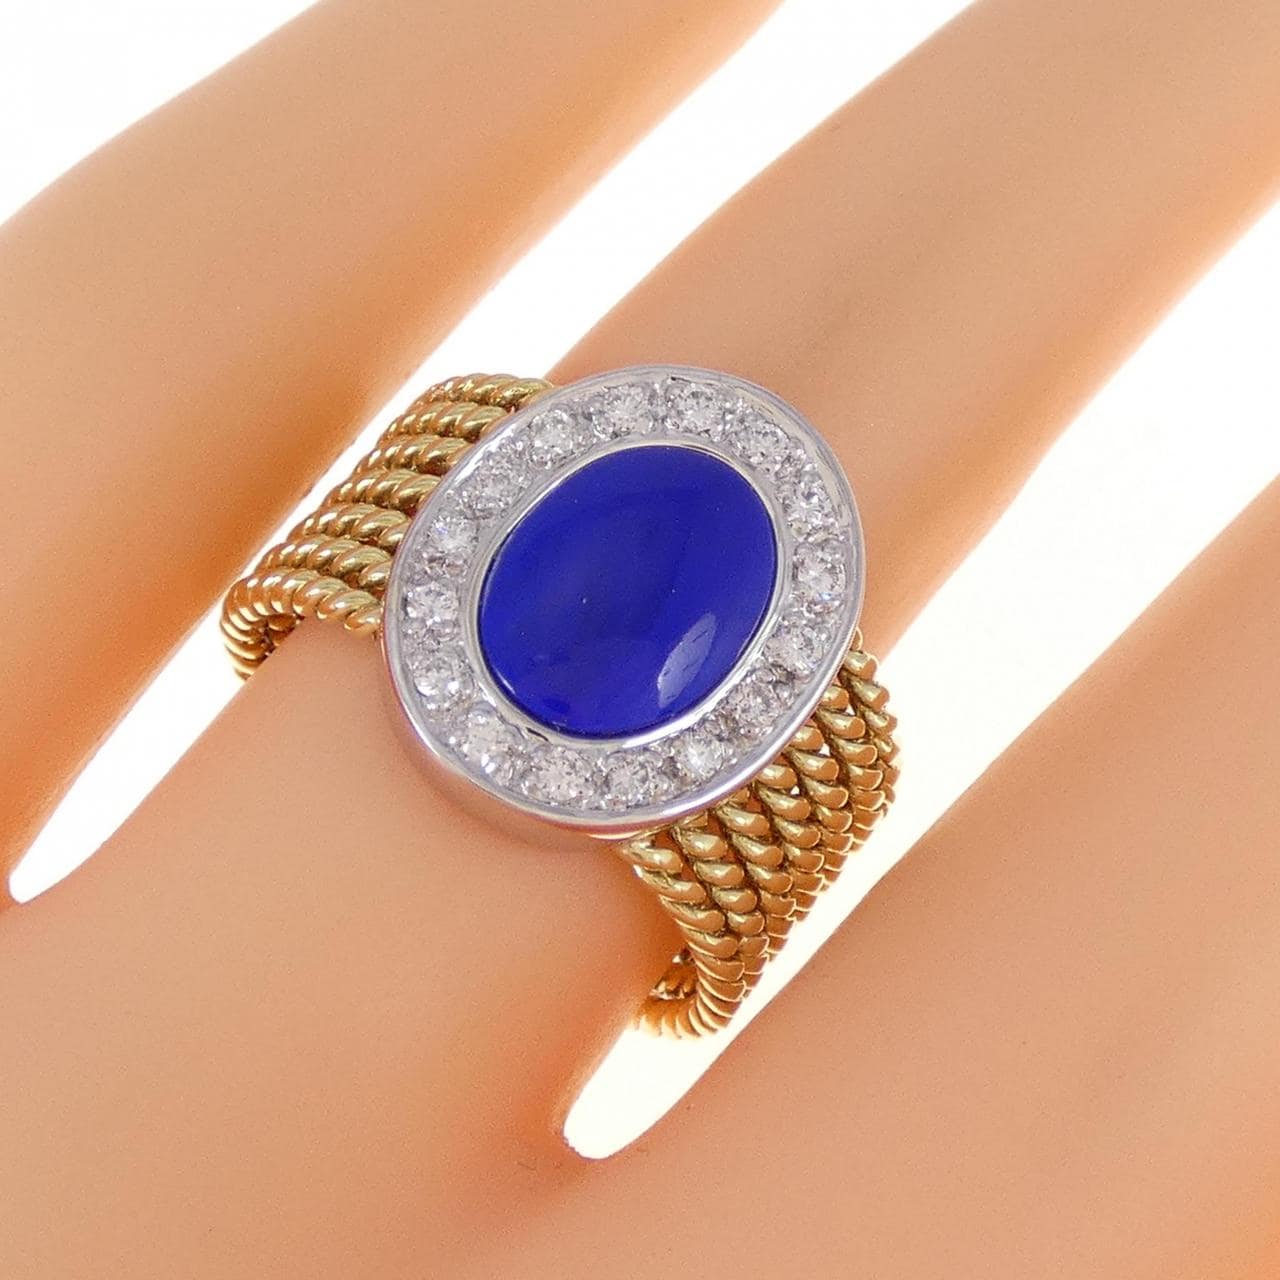 K18YG/K18WG lapis lazuli ring